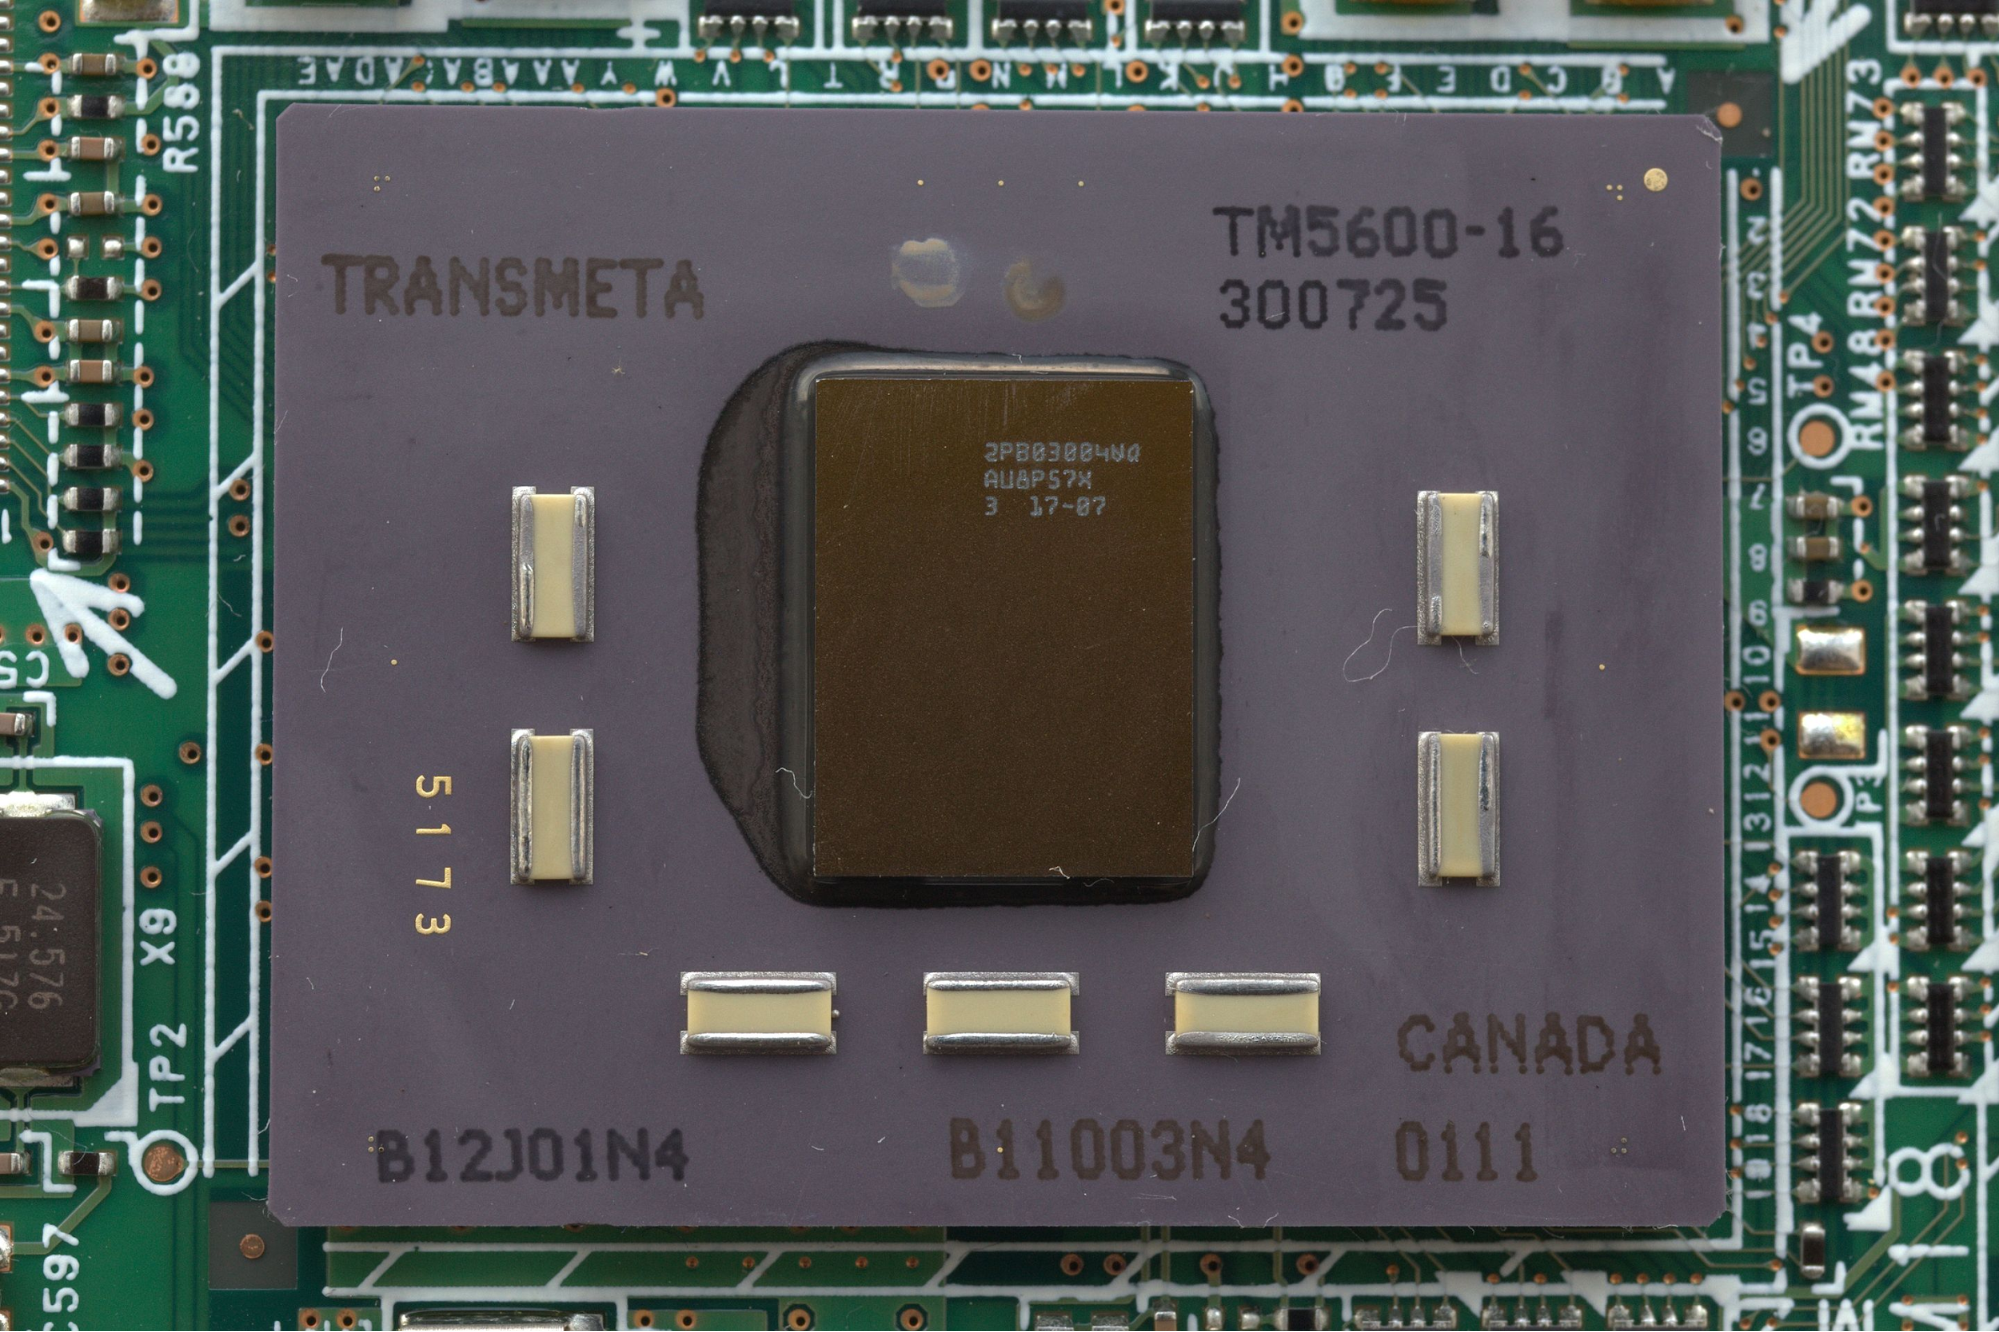 照片中提到了LV WYAAABAADAE、TRANSMETA、TM5600-16，跟蘇錦電力系統、寶緹嘉（Bottega Veneta）有關，包含了電子工程、中央處理器、Transmeta、x86、指令字很長